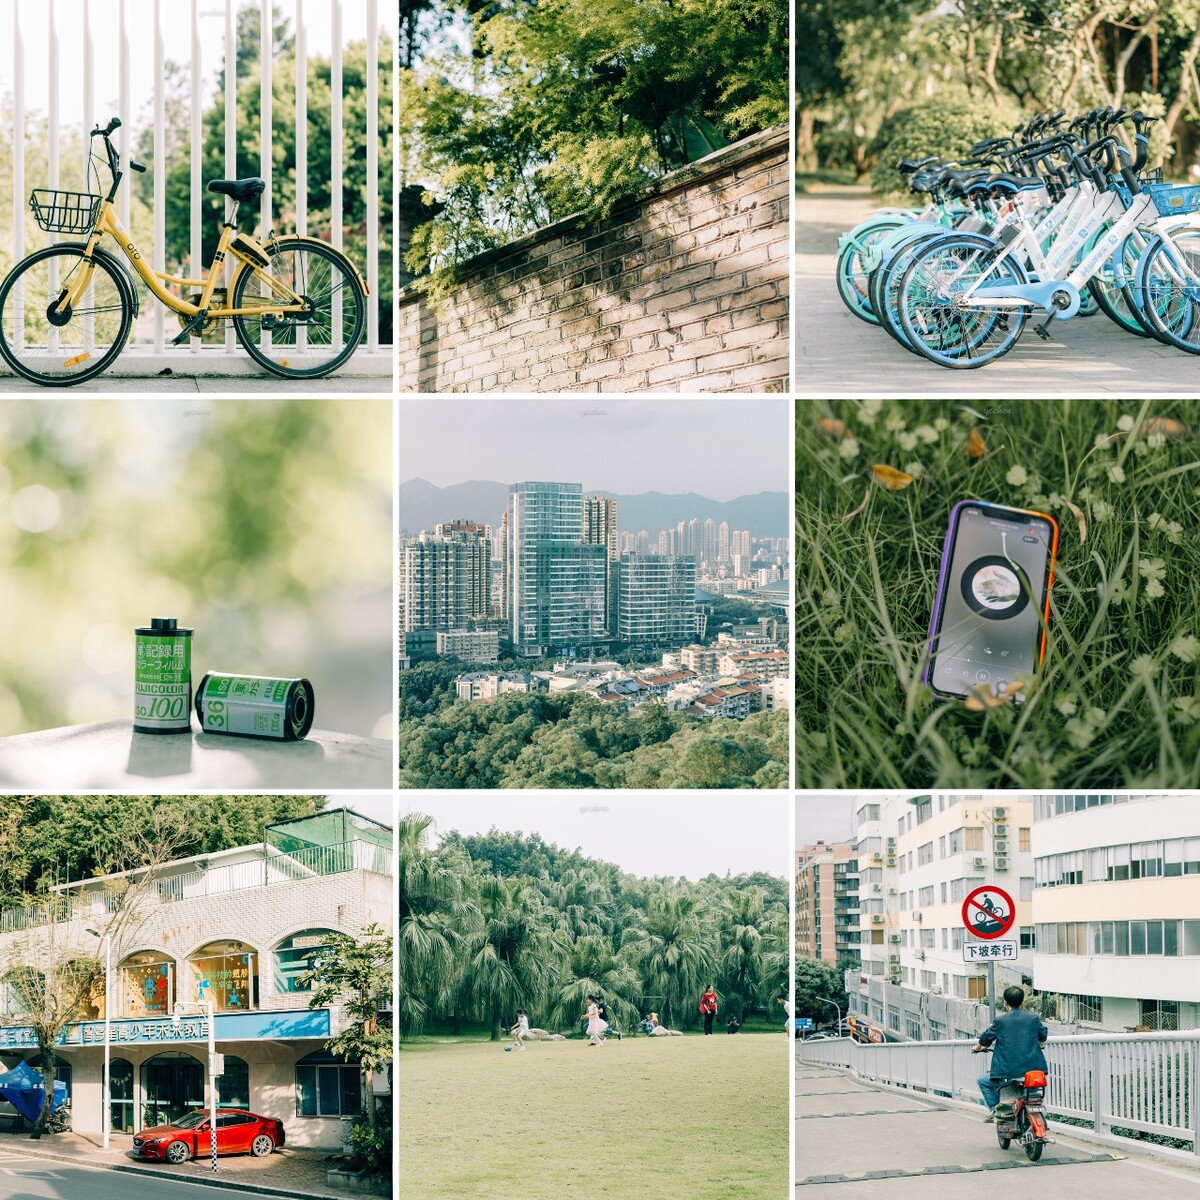 自行车停放空间设计,自行车停车架设置装置美化市容市貌